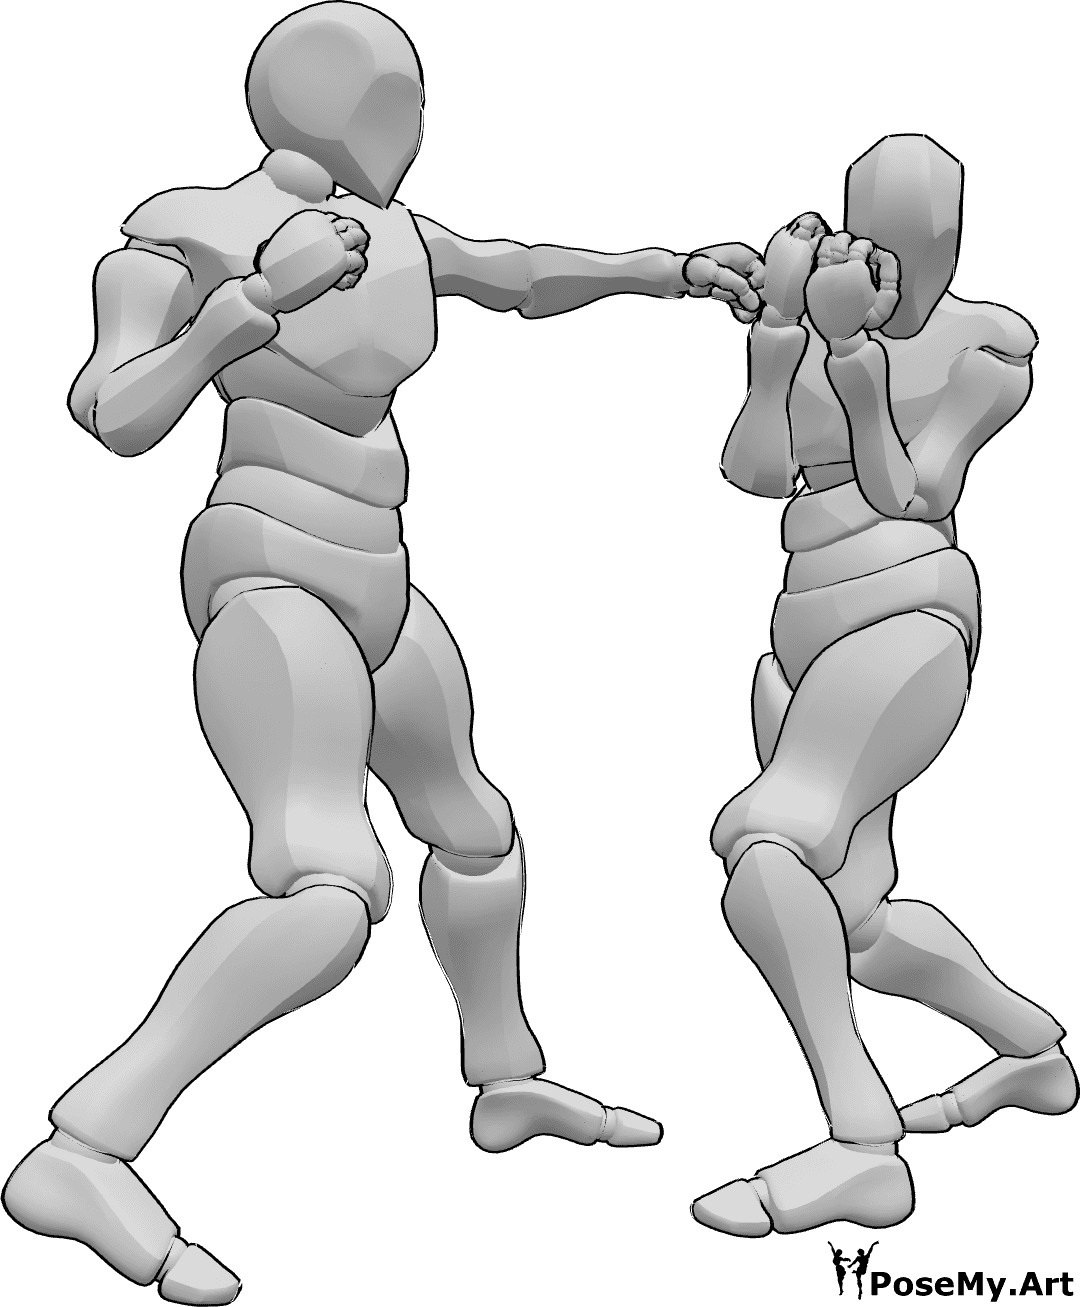 Référence des poses- Pose de l'esquive du crochet gauche - Deux hommes font de la boxe, l'un d'eux lance un crochet du gauche, l'autre esquive le coup de poing